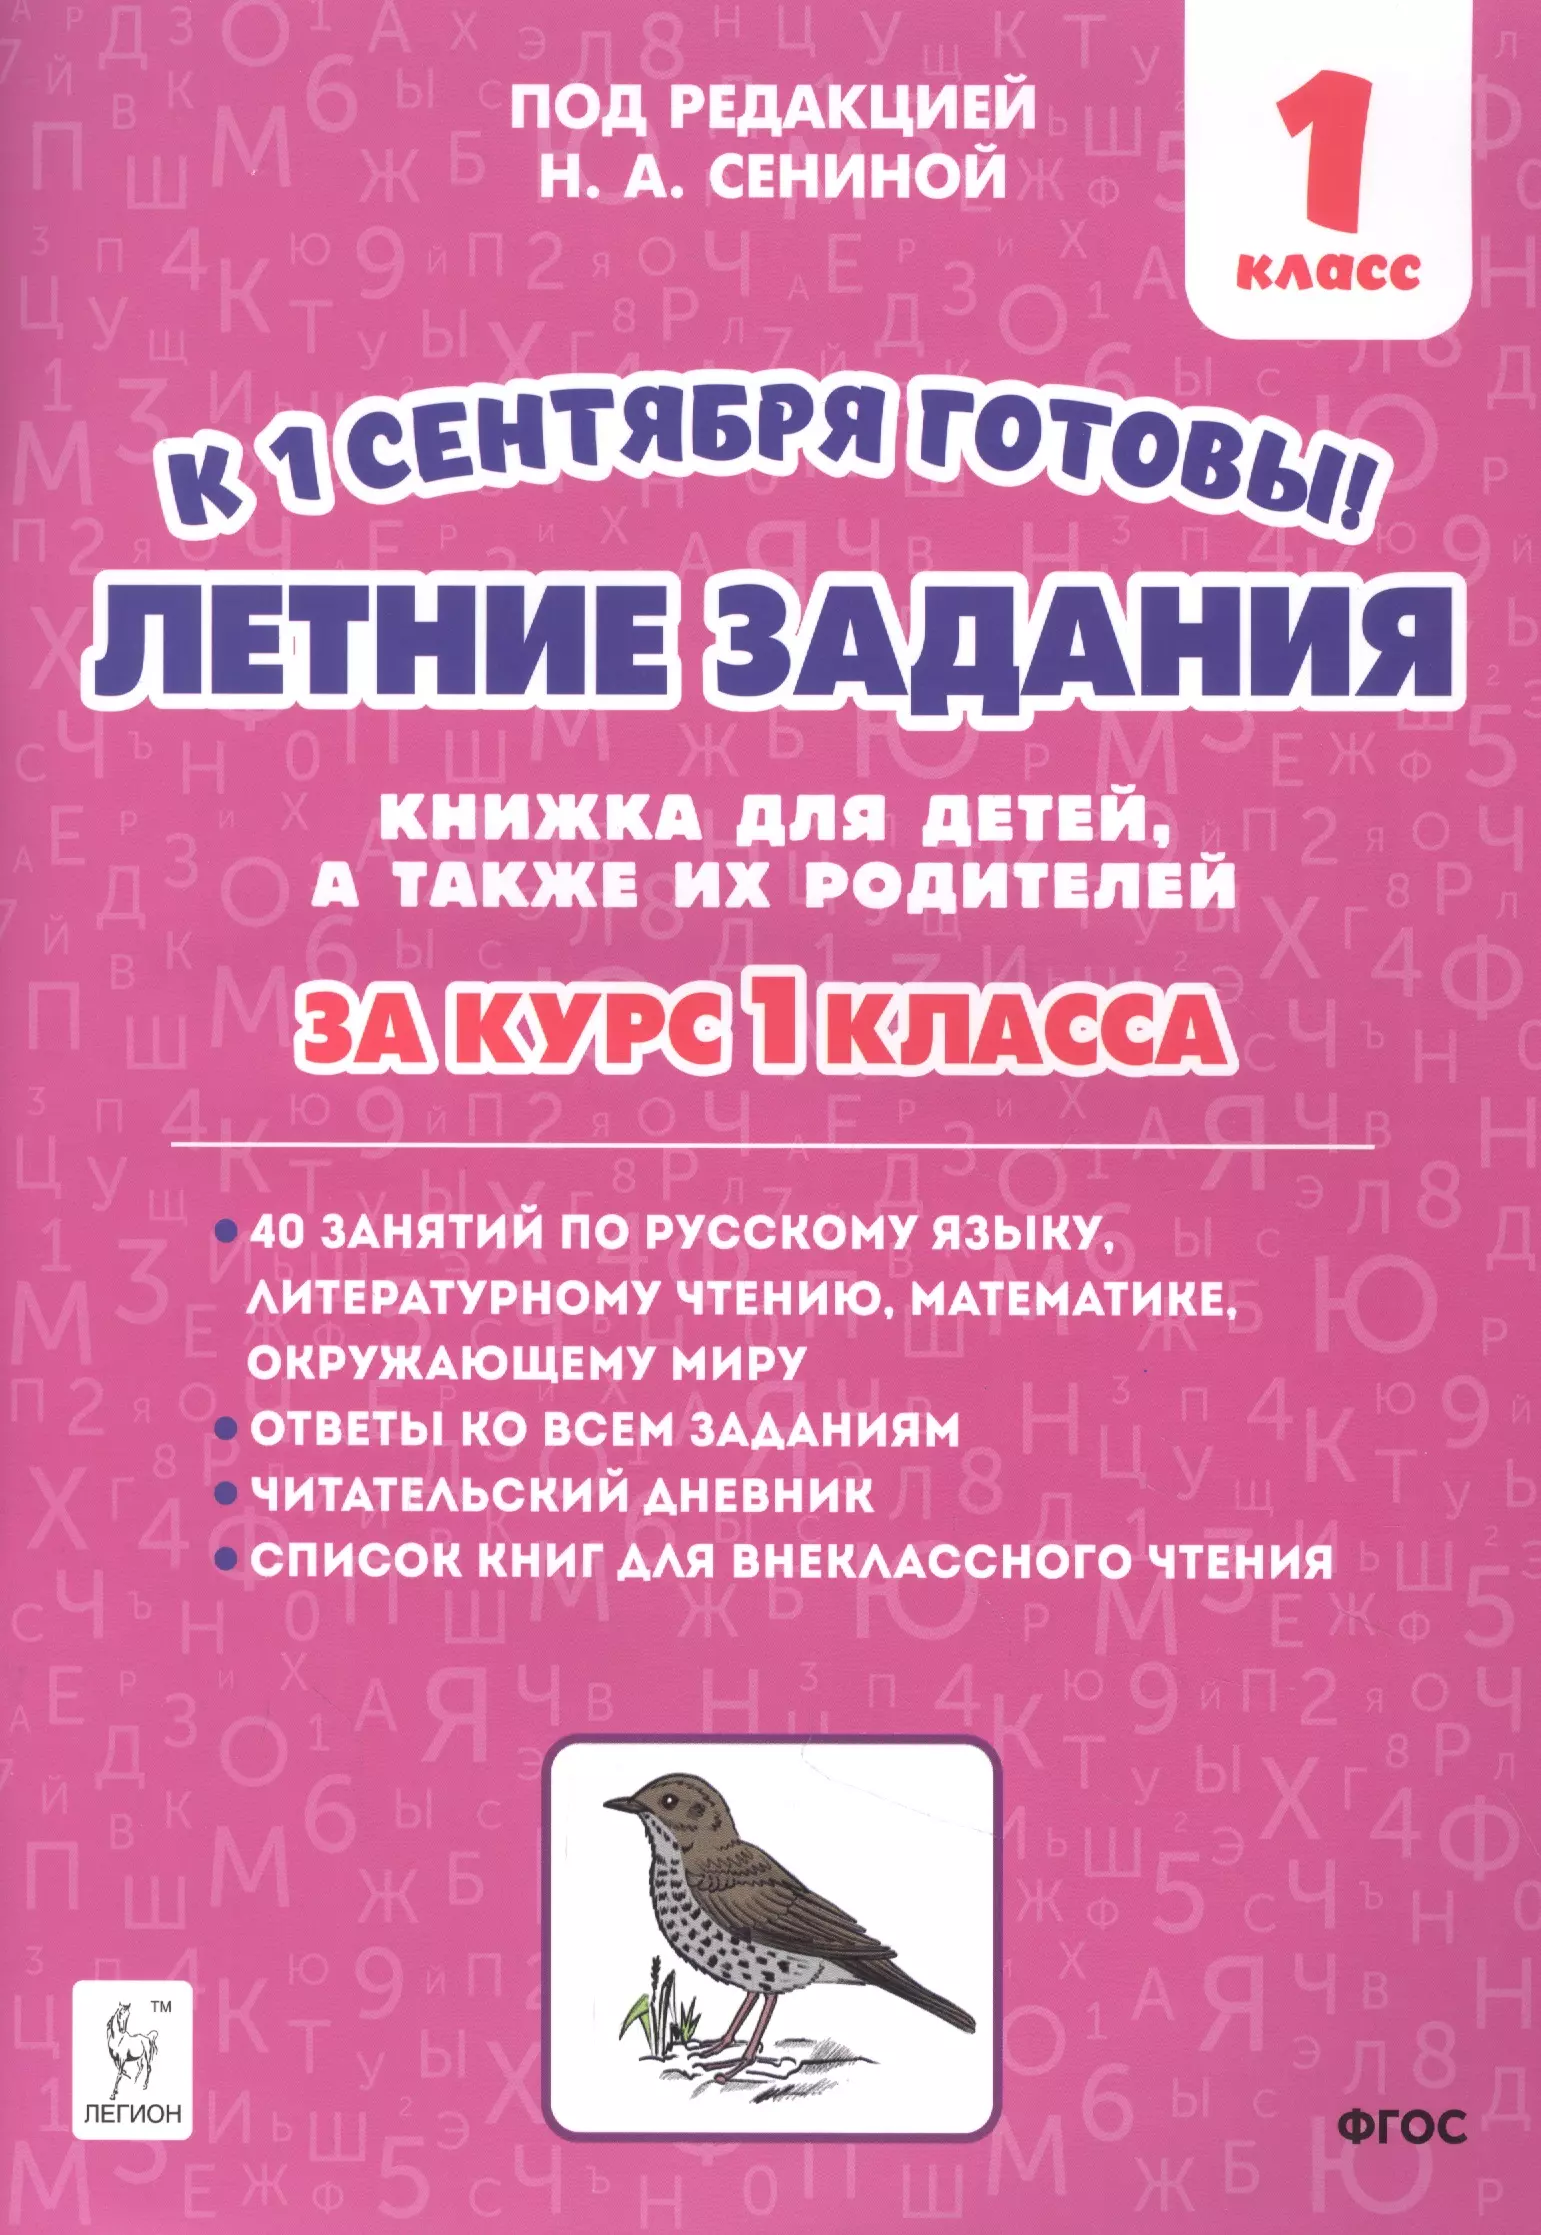 Сенина Наталья Аркадьевна - Летние задания. К 1 сентября готовы! Книжка для детей, а также их родителей. За курс 1-го класса